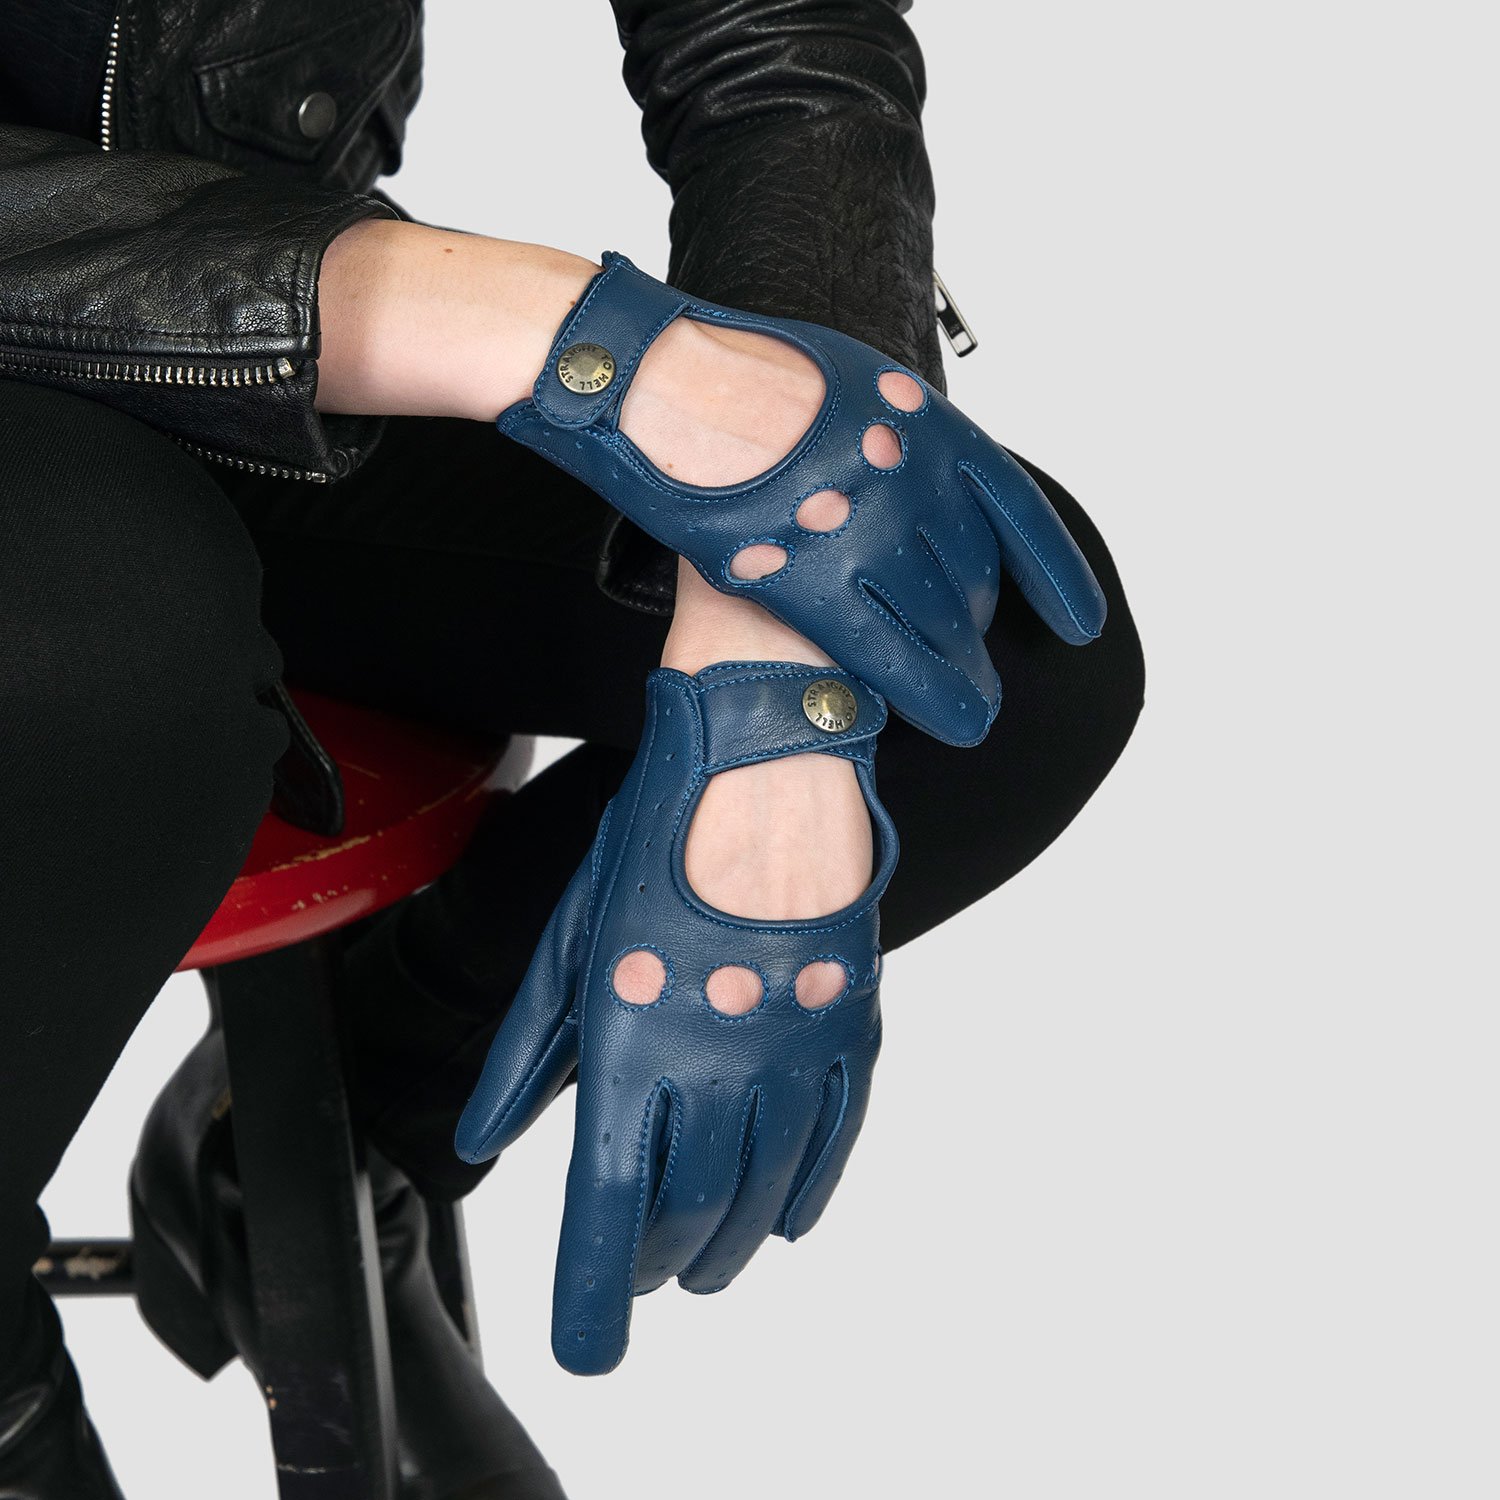 Bullitt Fingerless - Leather Gloves - Women's by Straight to Hell